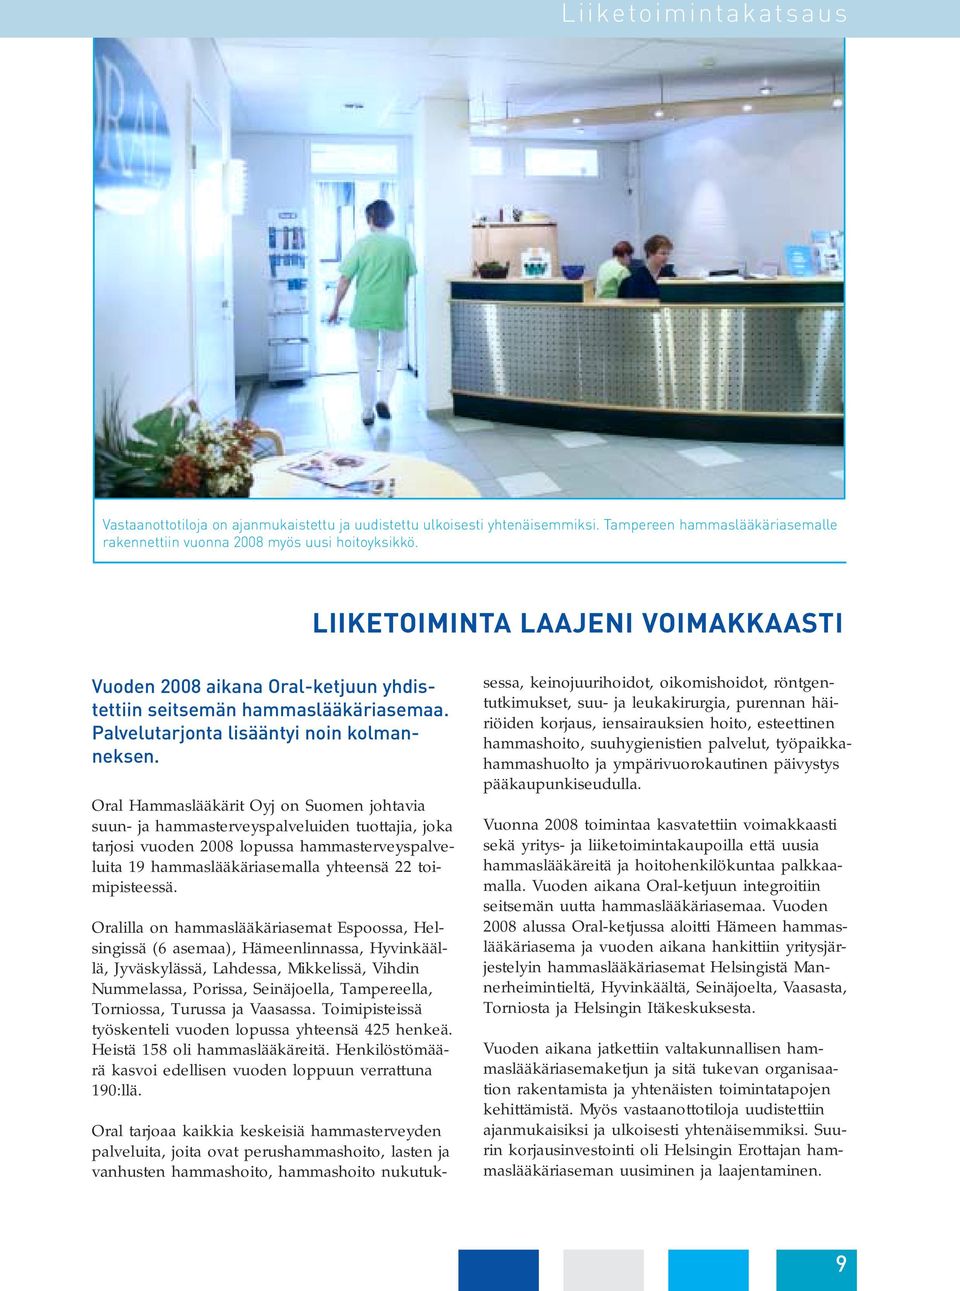 Oral Hammaslääkärit Oyj on Suomen johtavia suun- ja hammasterveyspalveluiden tuottajia, joka tarjosi vuoden 2008 lopussa hammasterveyspalveluita 19 hammaslääkäriasemalla yhteensä 22 toimipisteessä.